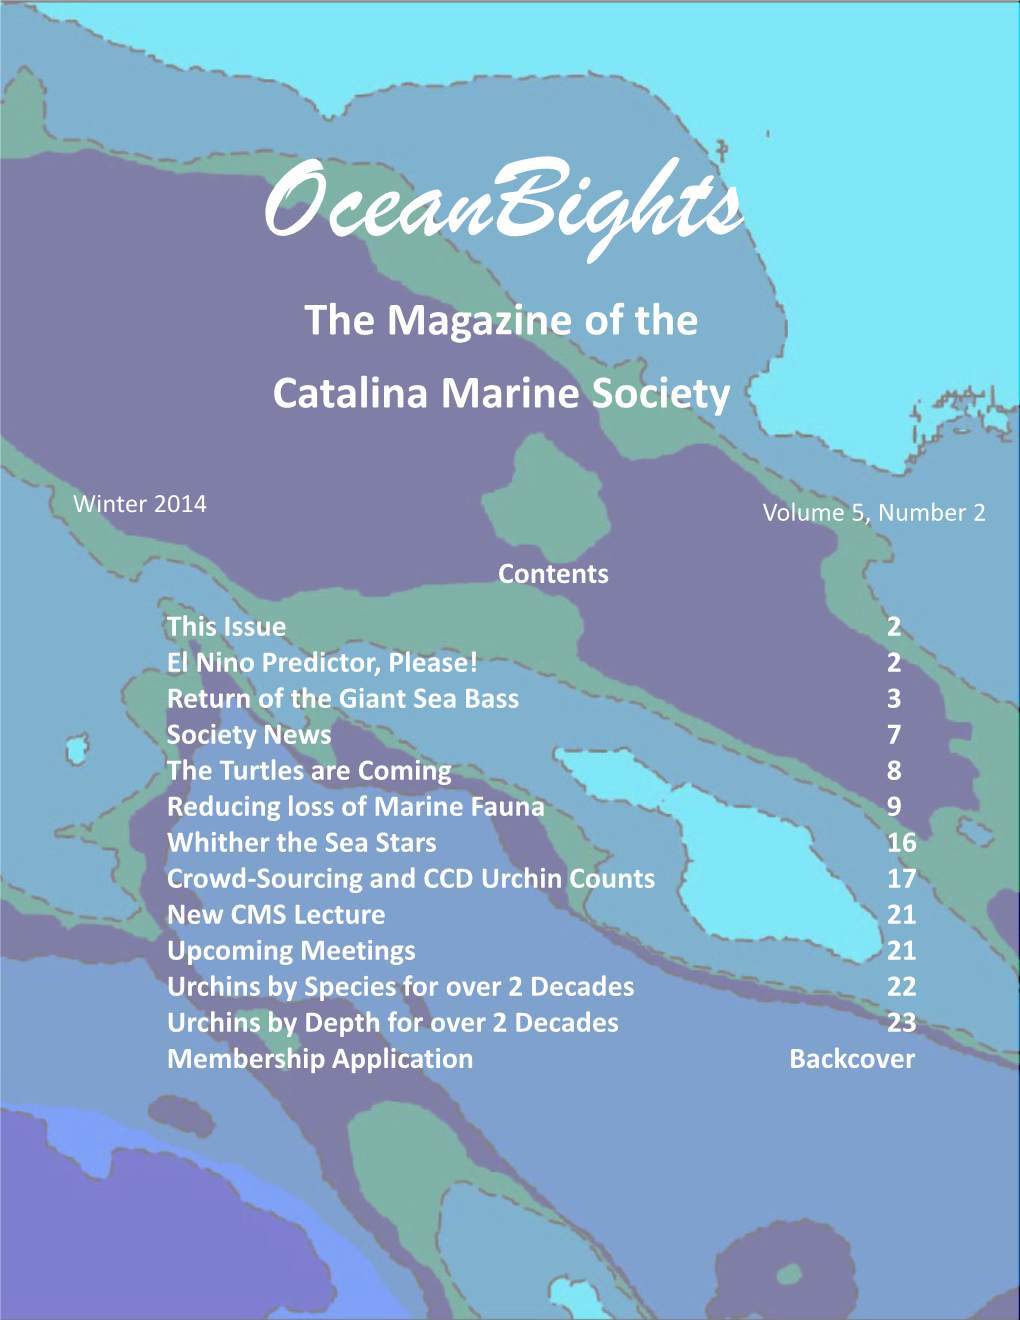 The Magazine of the Catalina Marine Society